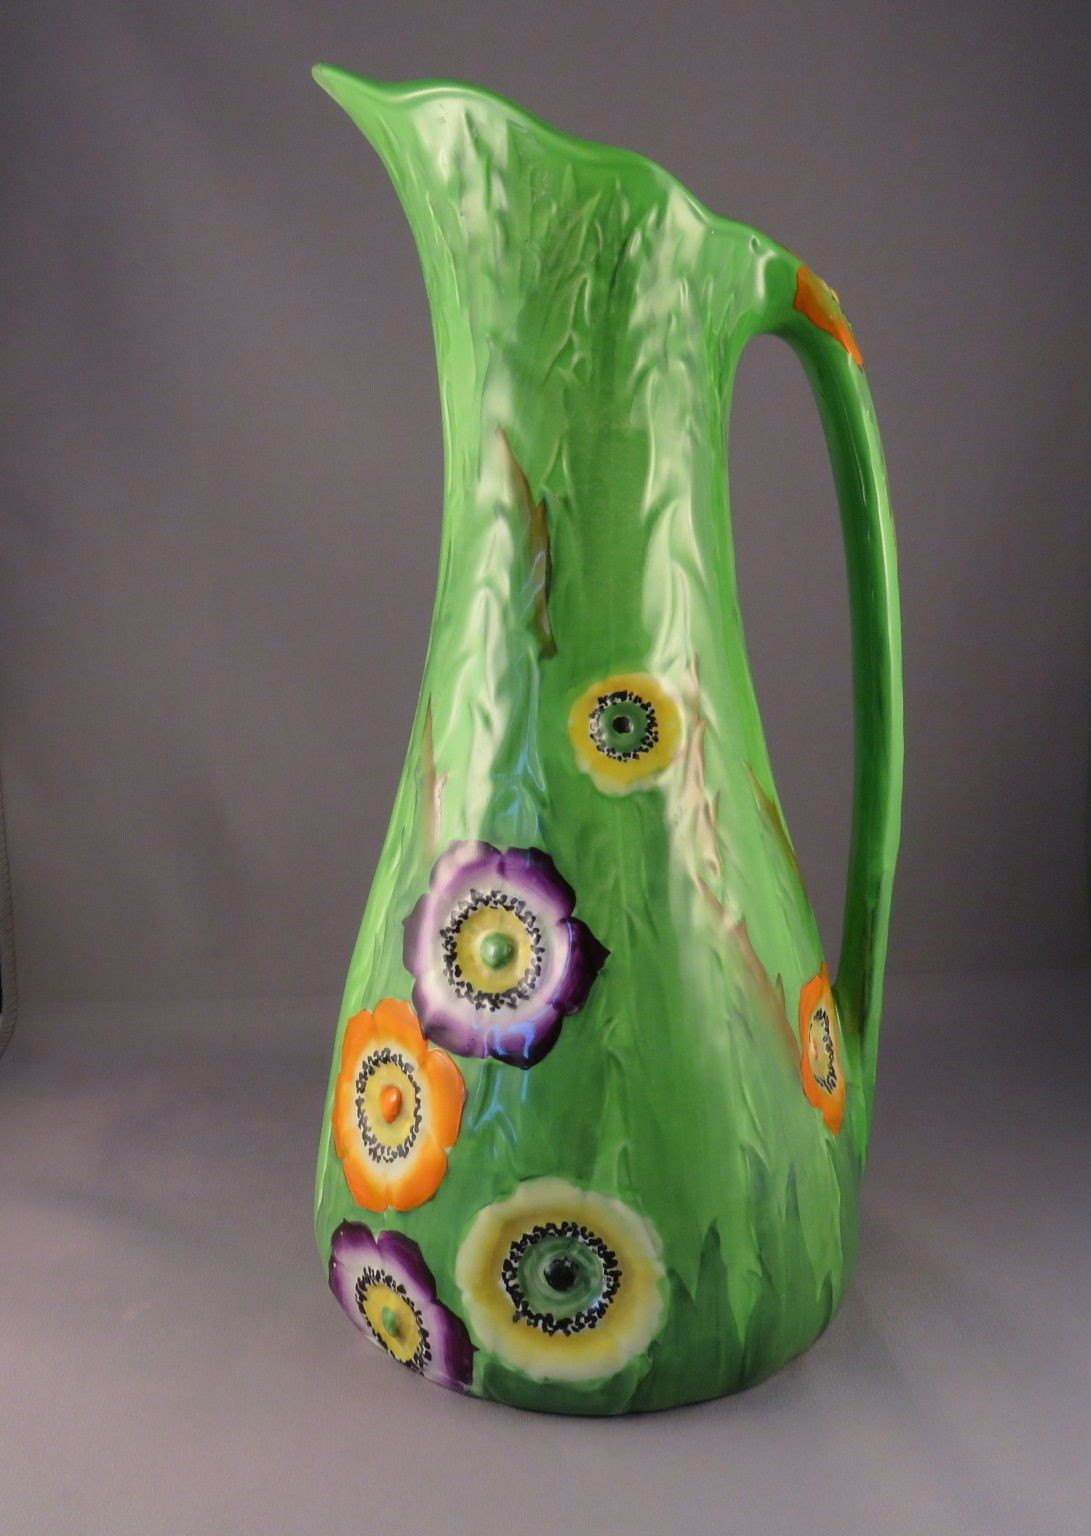 30 Amazing Carlton Ware Vase 2024 free download carlton ware vase of carlton ware green anemone jug in pottery porcelain glass pertaining to carlton ware green anemone jug in pottery porcelain glass